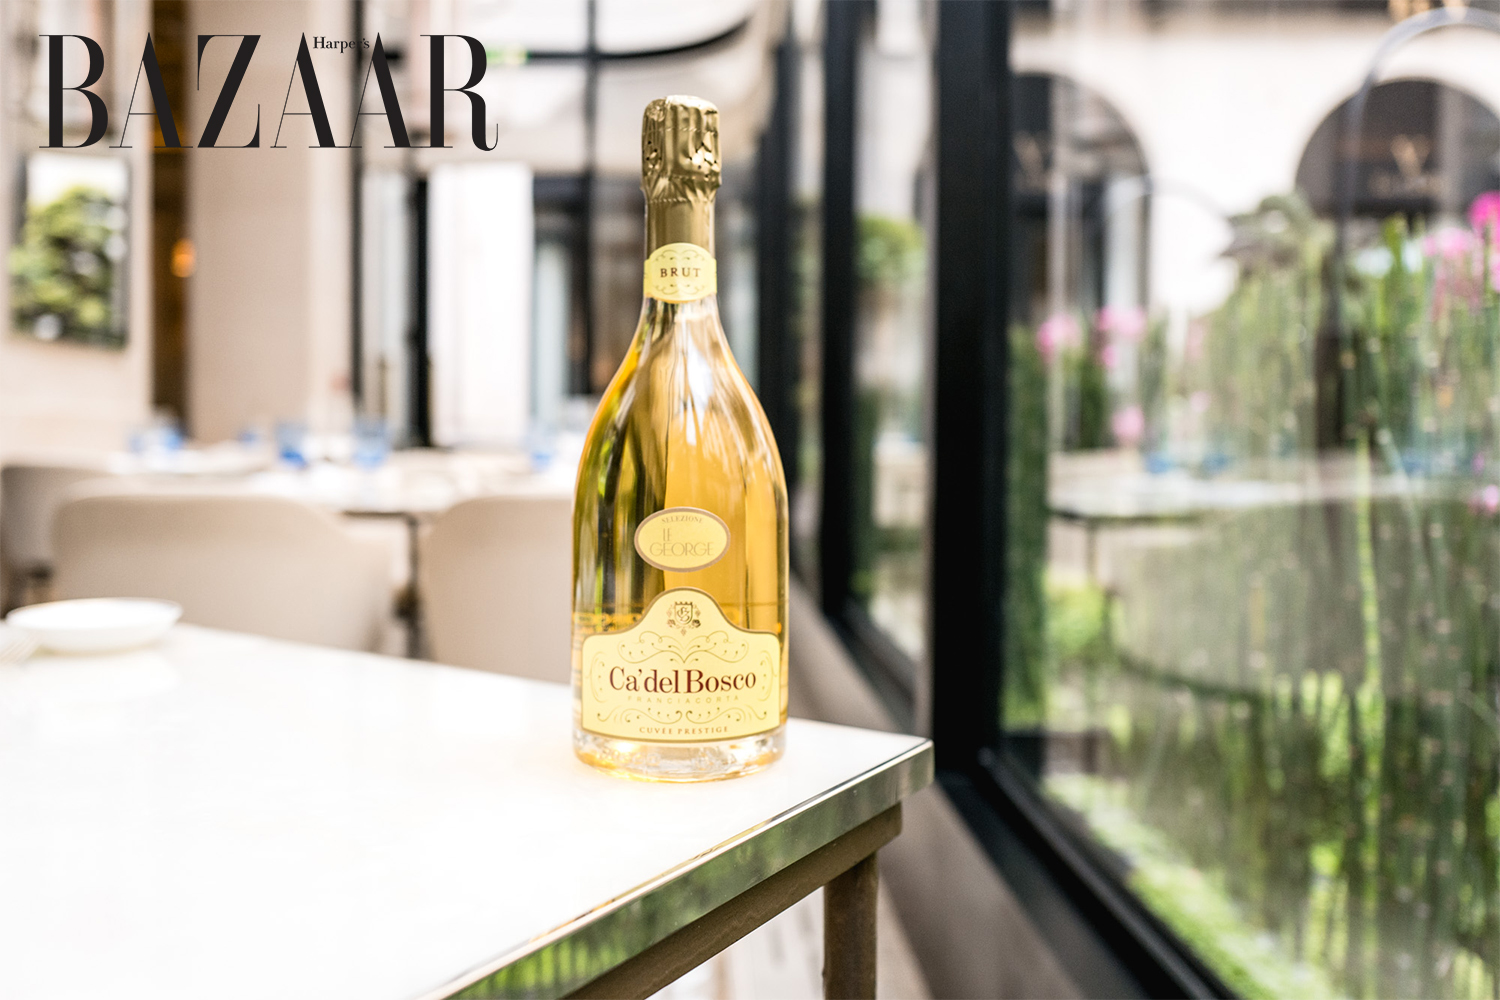 Harper's Bazaar_Rượu champagne cho ngày kỷ niệm_02